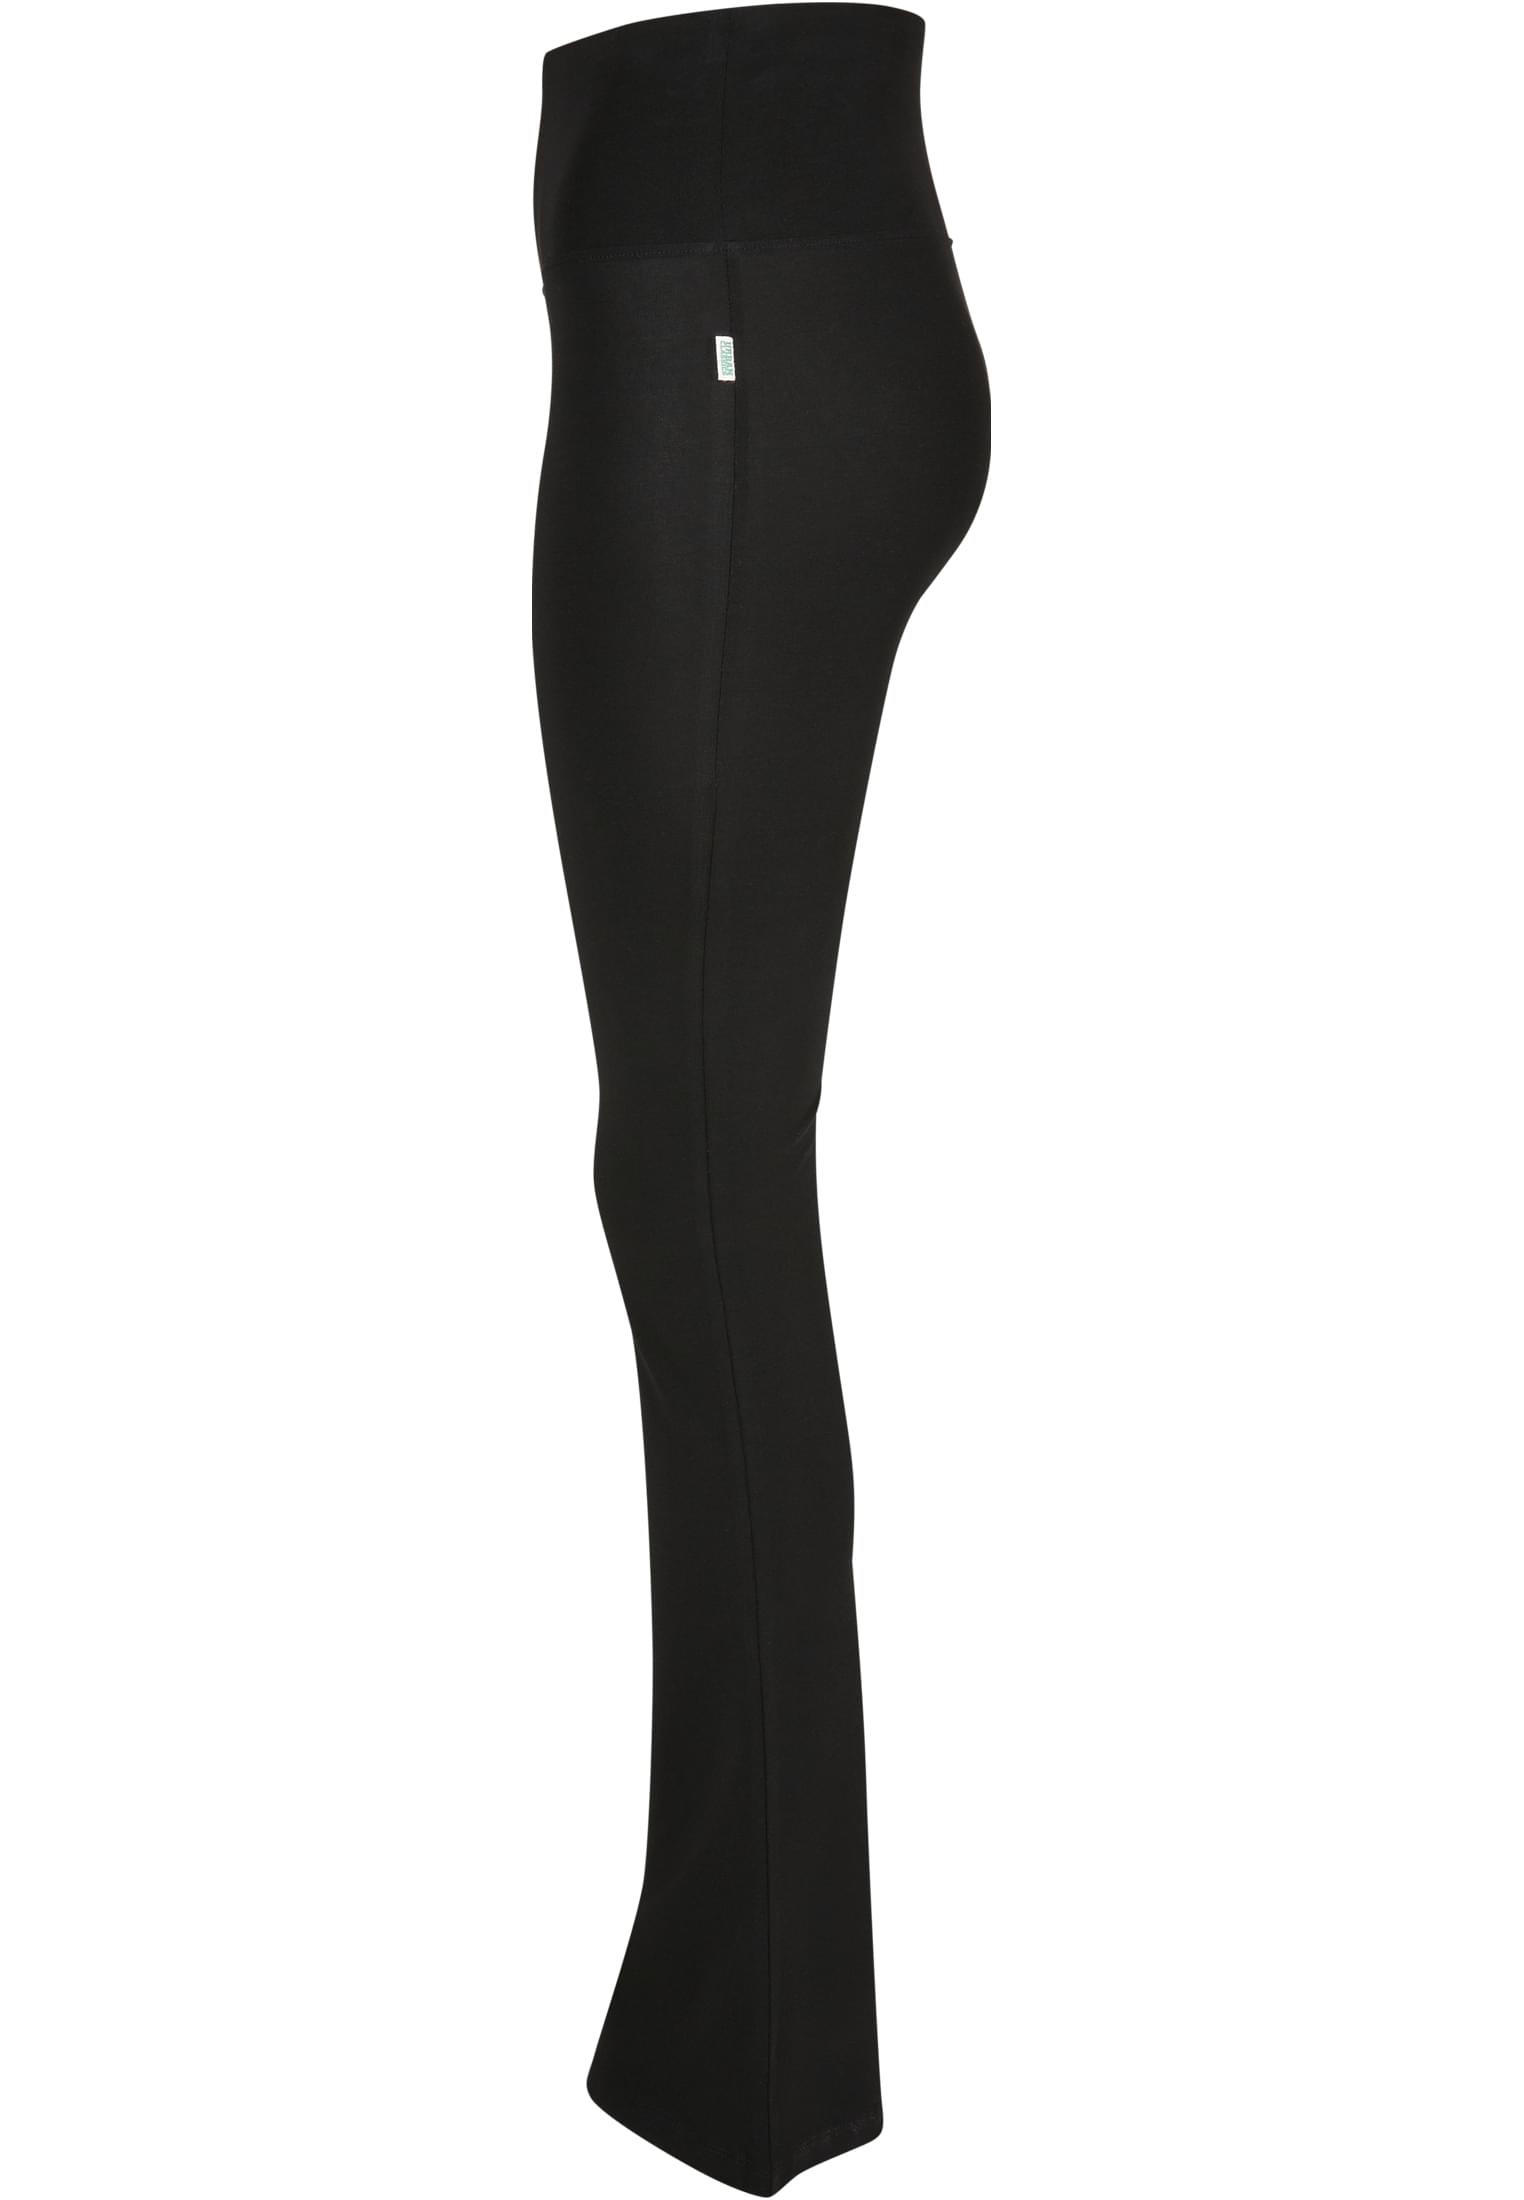 Lucy PowerMax boot cut leggings  Boot cut leggings, Leggings shop, Pants  for women